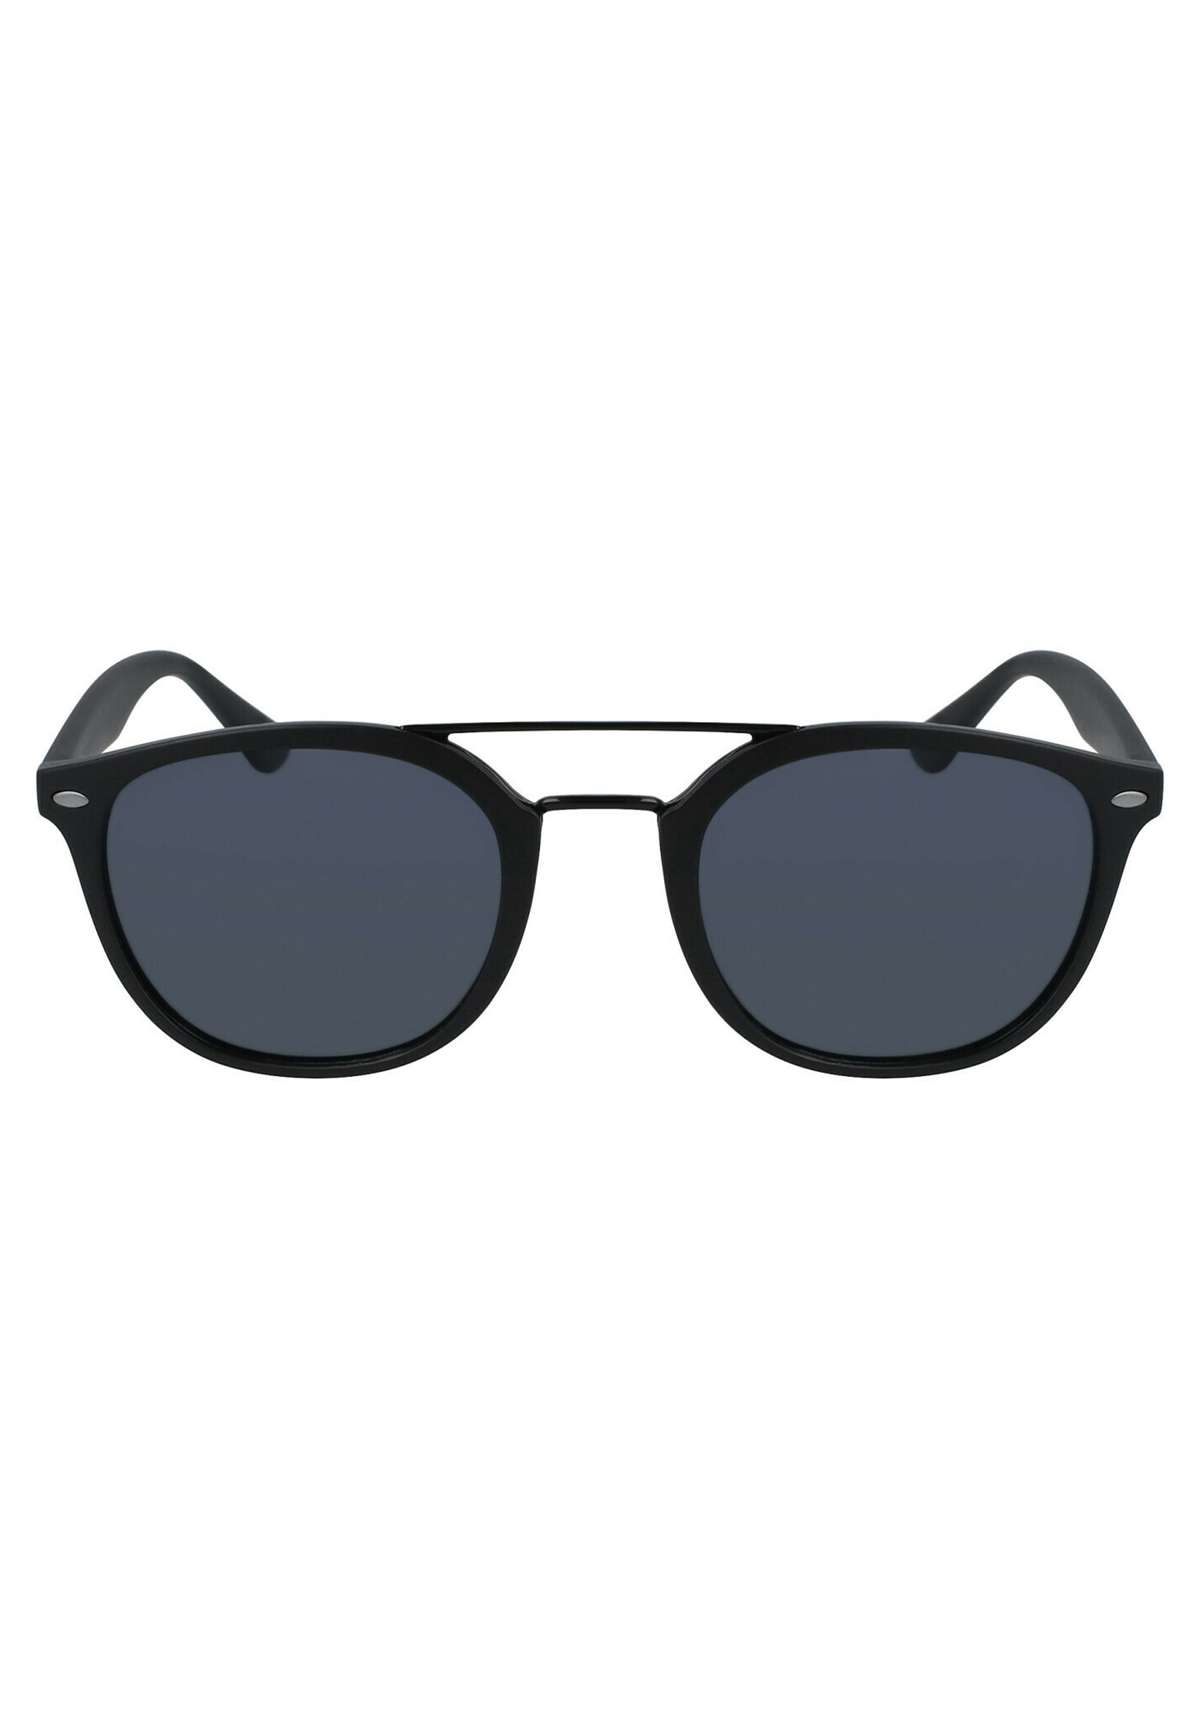 Солнцезащитные очки FIRECAMP